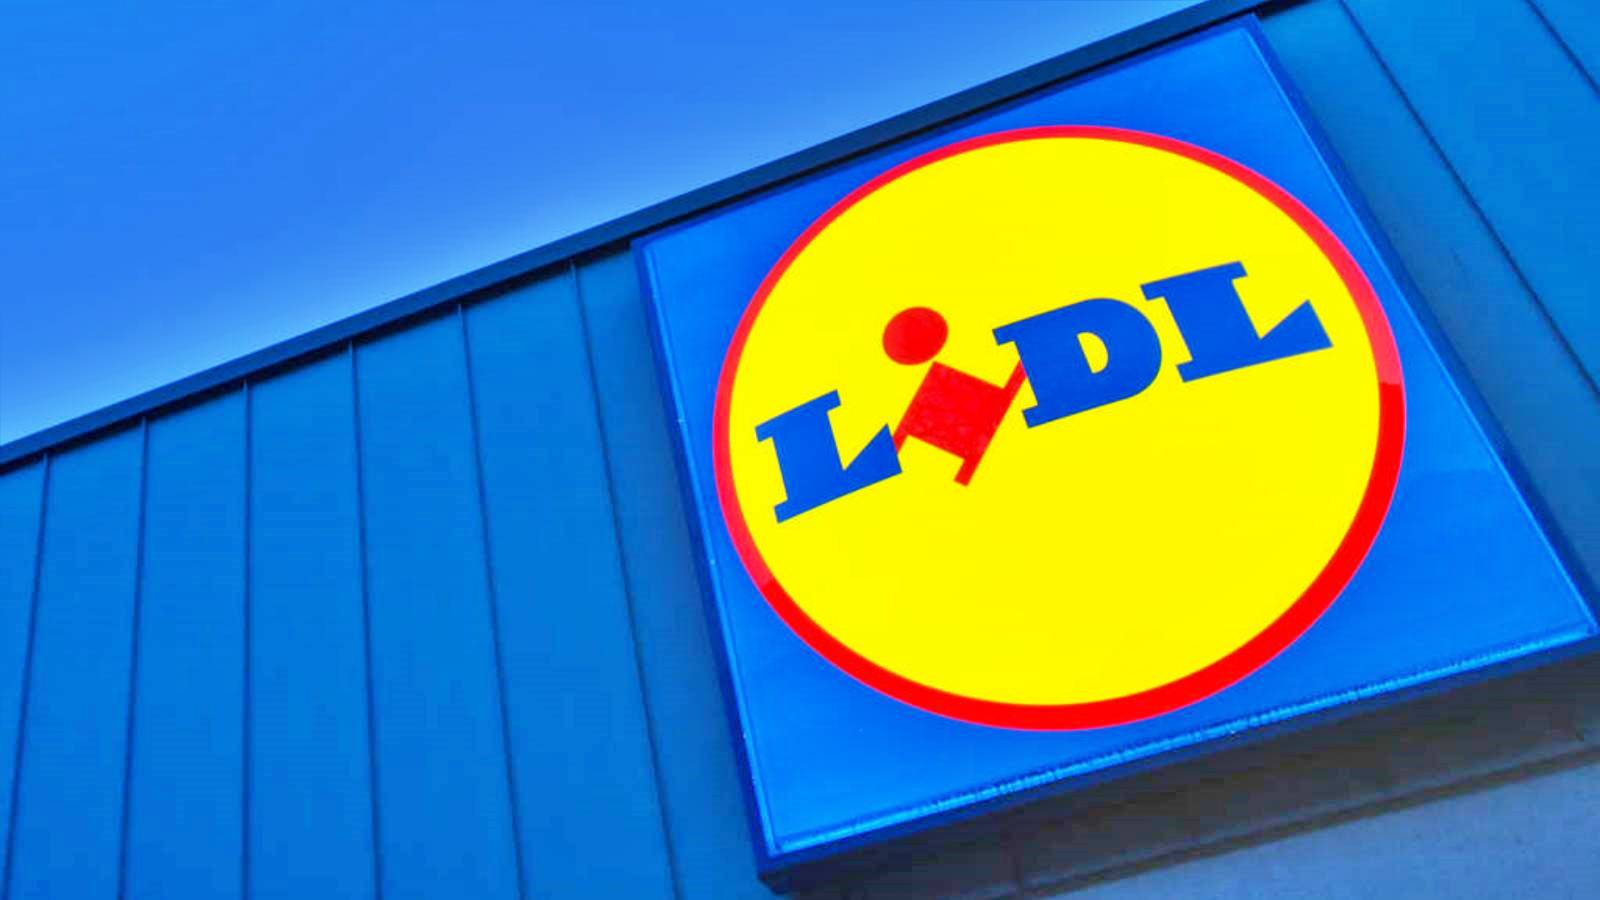 LIDL Roemenië wijzigt alle winkels per 1 december